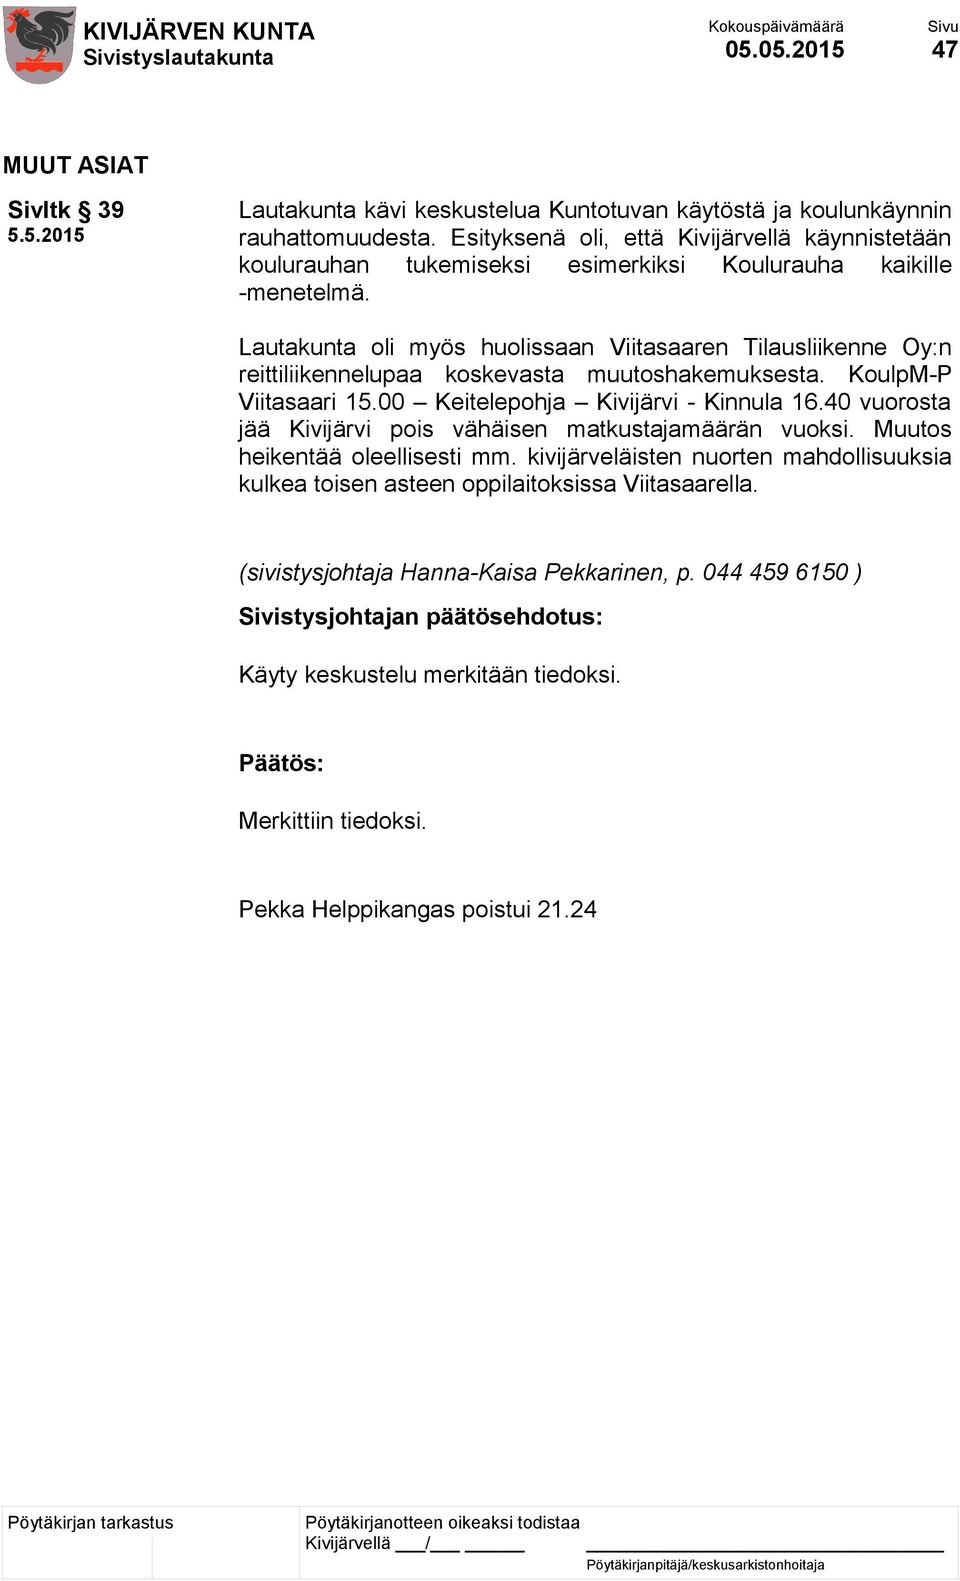 Lautakunta oli myös huolissaan Viitasaaren Tilausliikenne Oy:n reittiliikennelupaa koskevasta muutoshakemuksesta. KoulpM-P Viitasaari 15.00 Keitelepohja Kivijärvi - Kinnula 16.